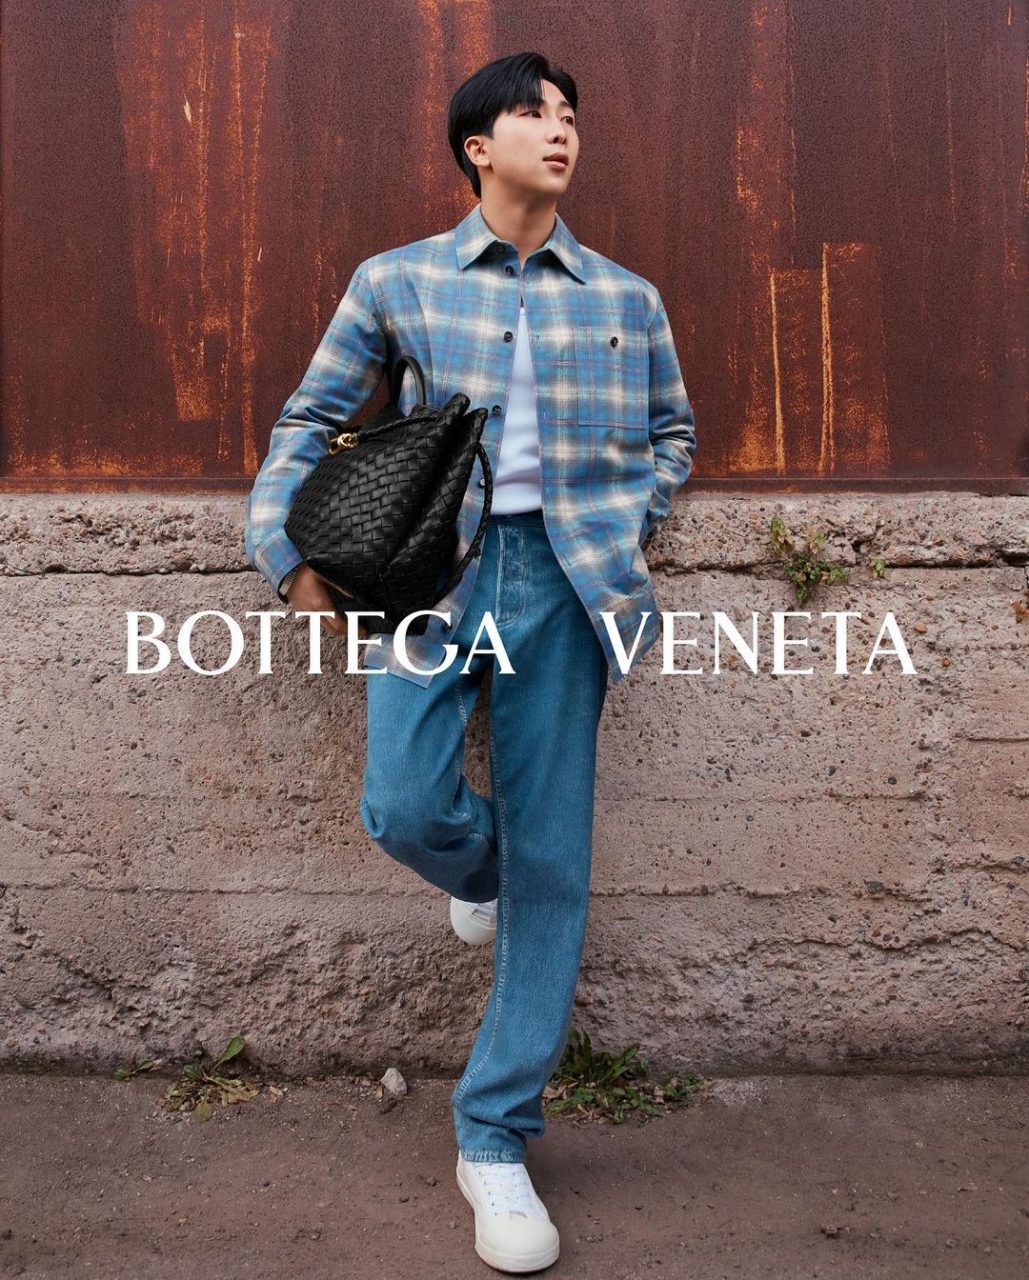 BTS's RM Officially Named Bottega Veneta's New Ambassador - Koreaboo